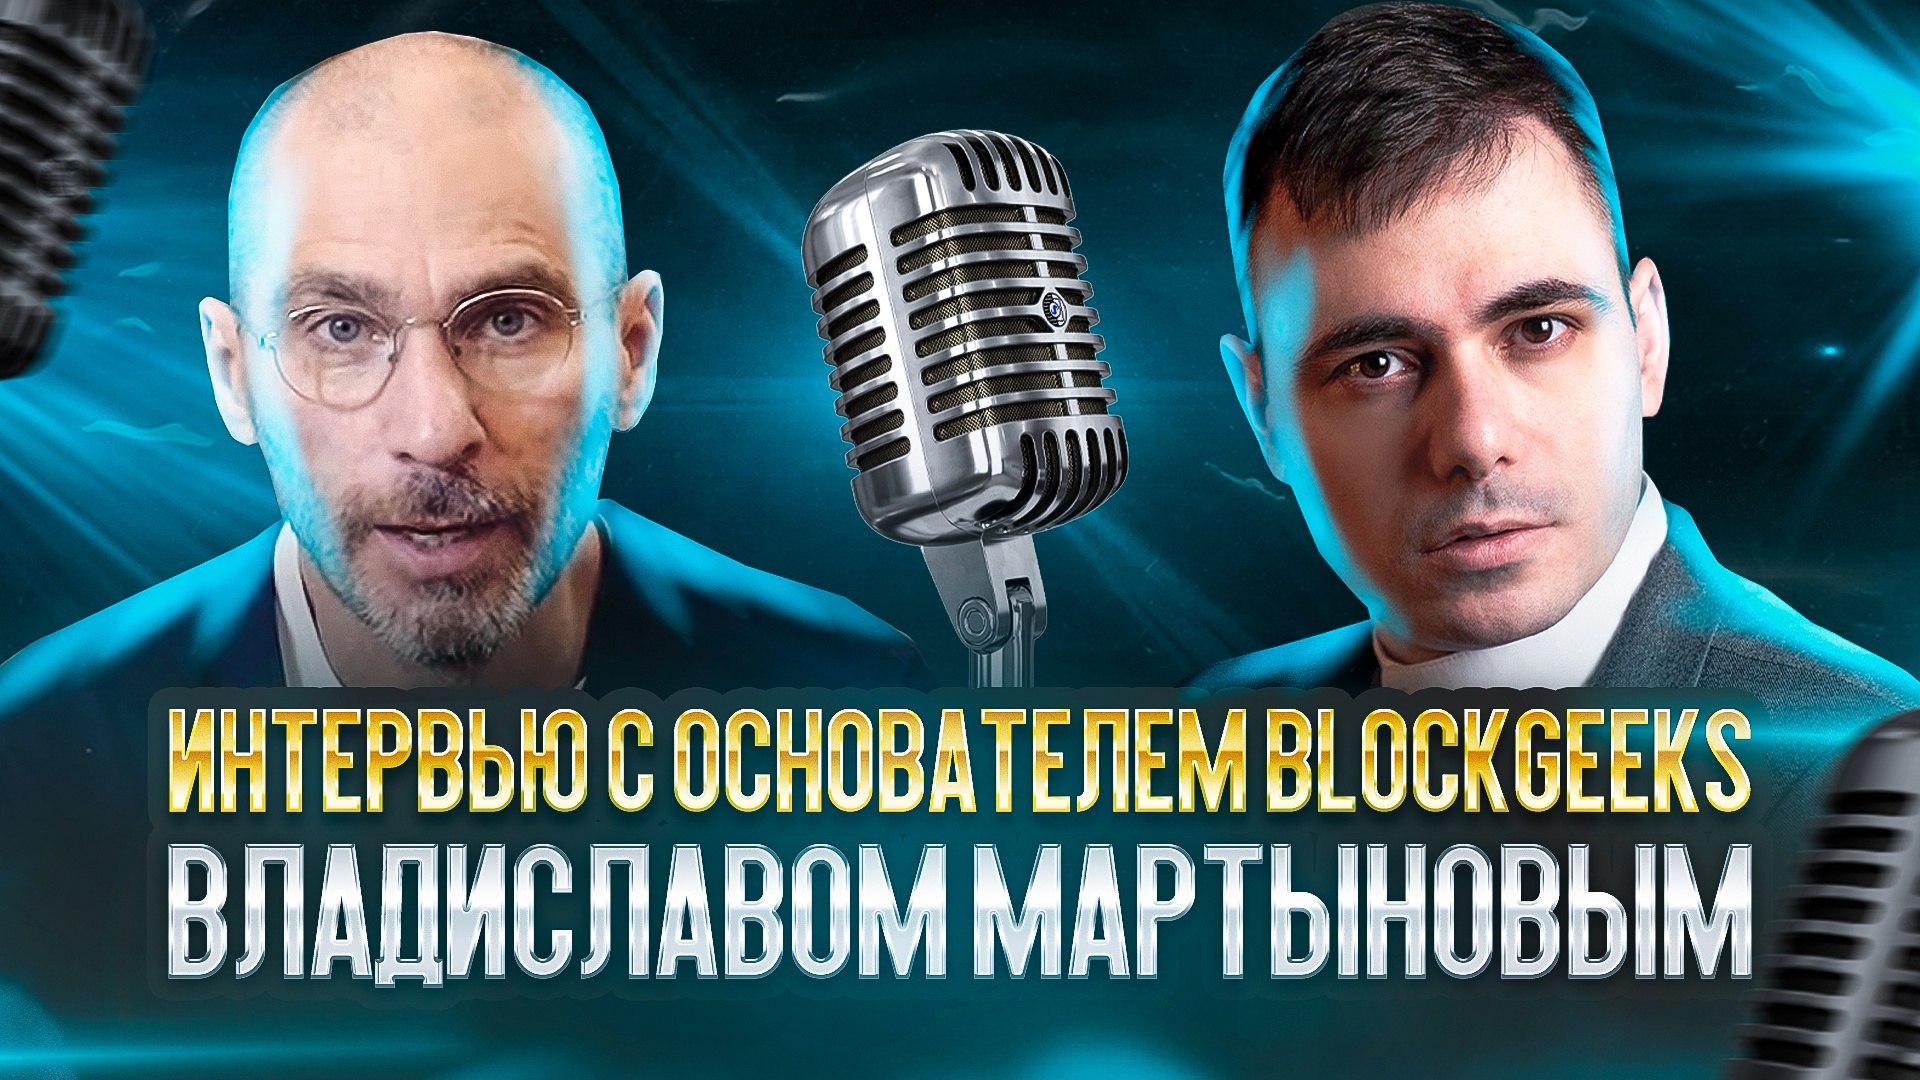 Владислав Мартынов интервью, мир WEB3.